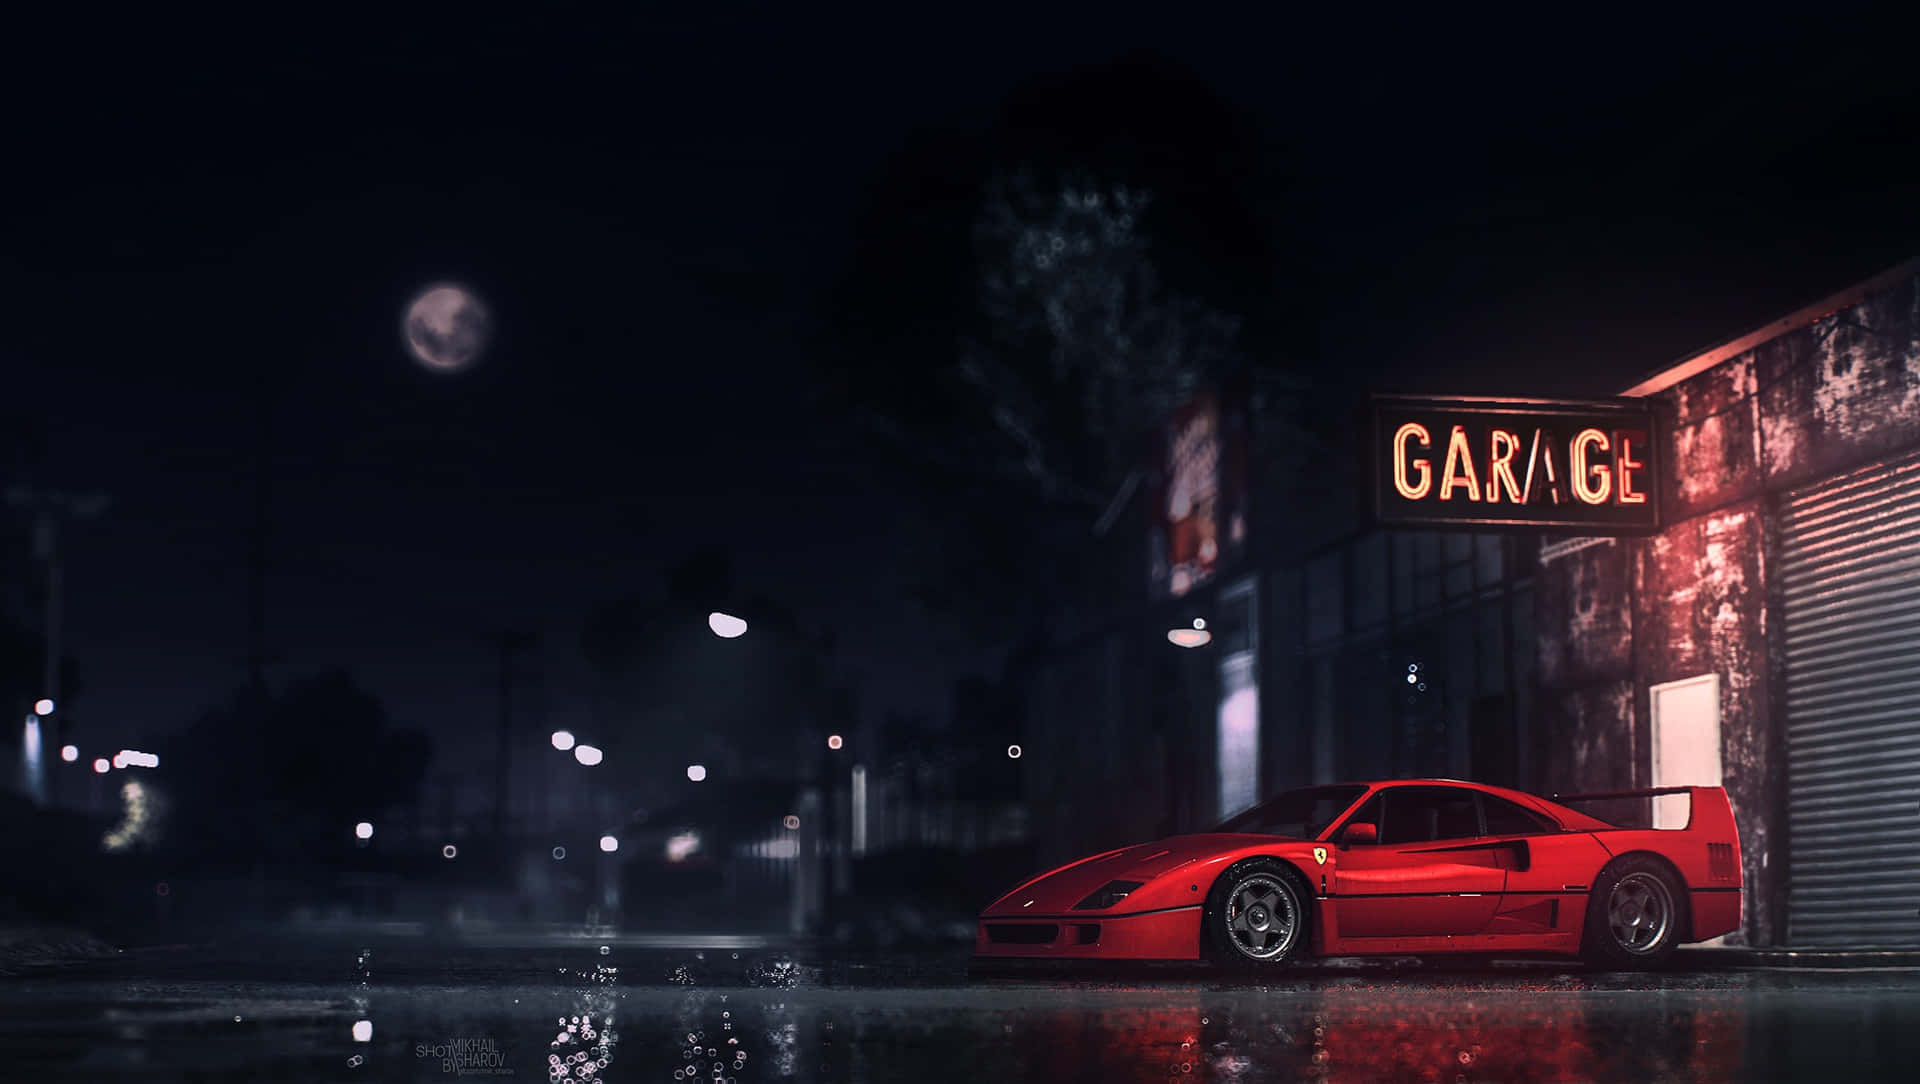 En skinnende og stilfuld Ferrari klar til brug. Wallpaper